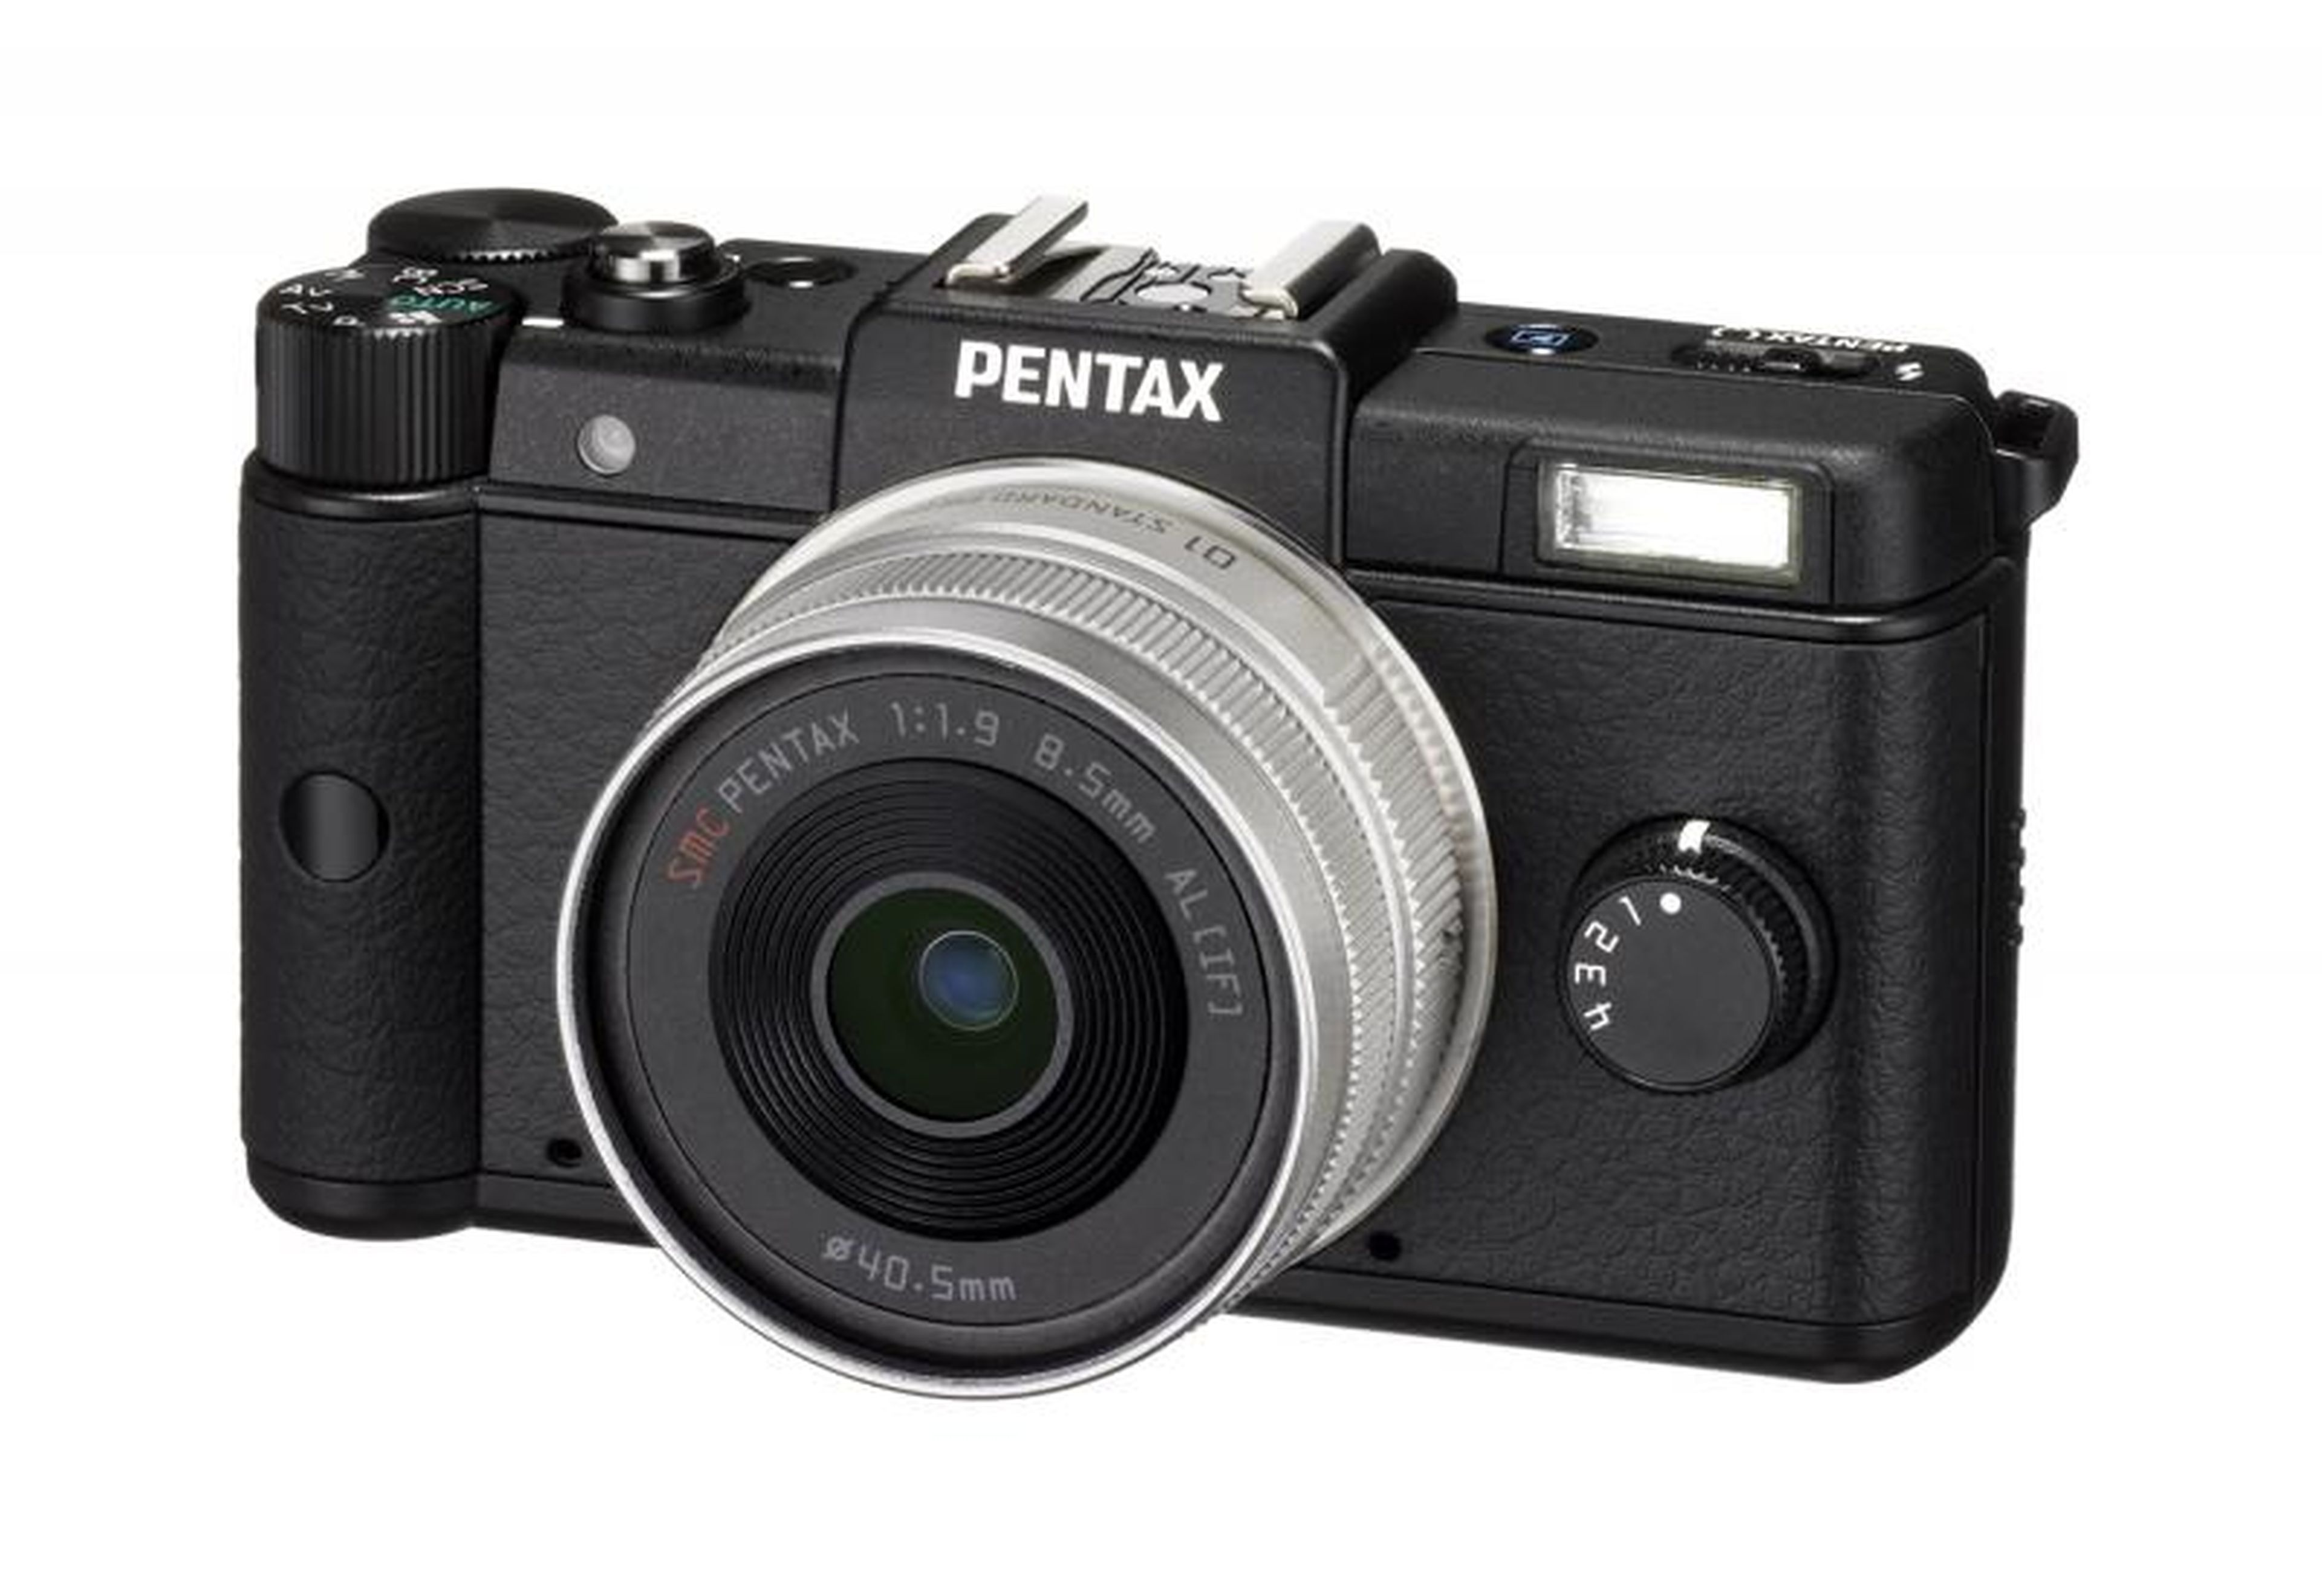 Nuevo modelo de la cámara Pentax en el mercado